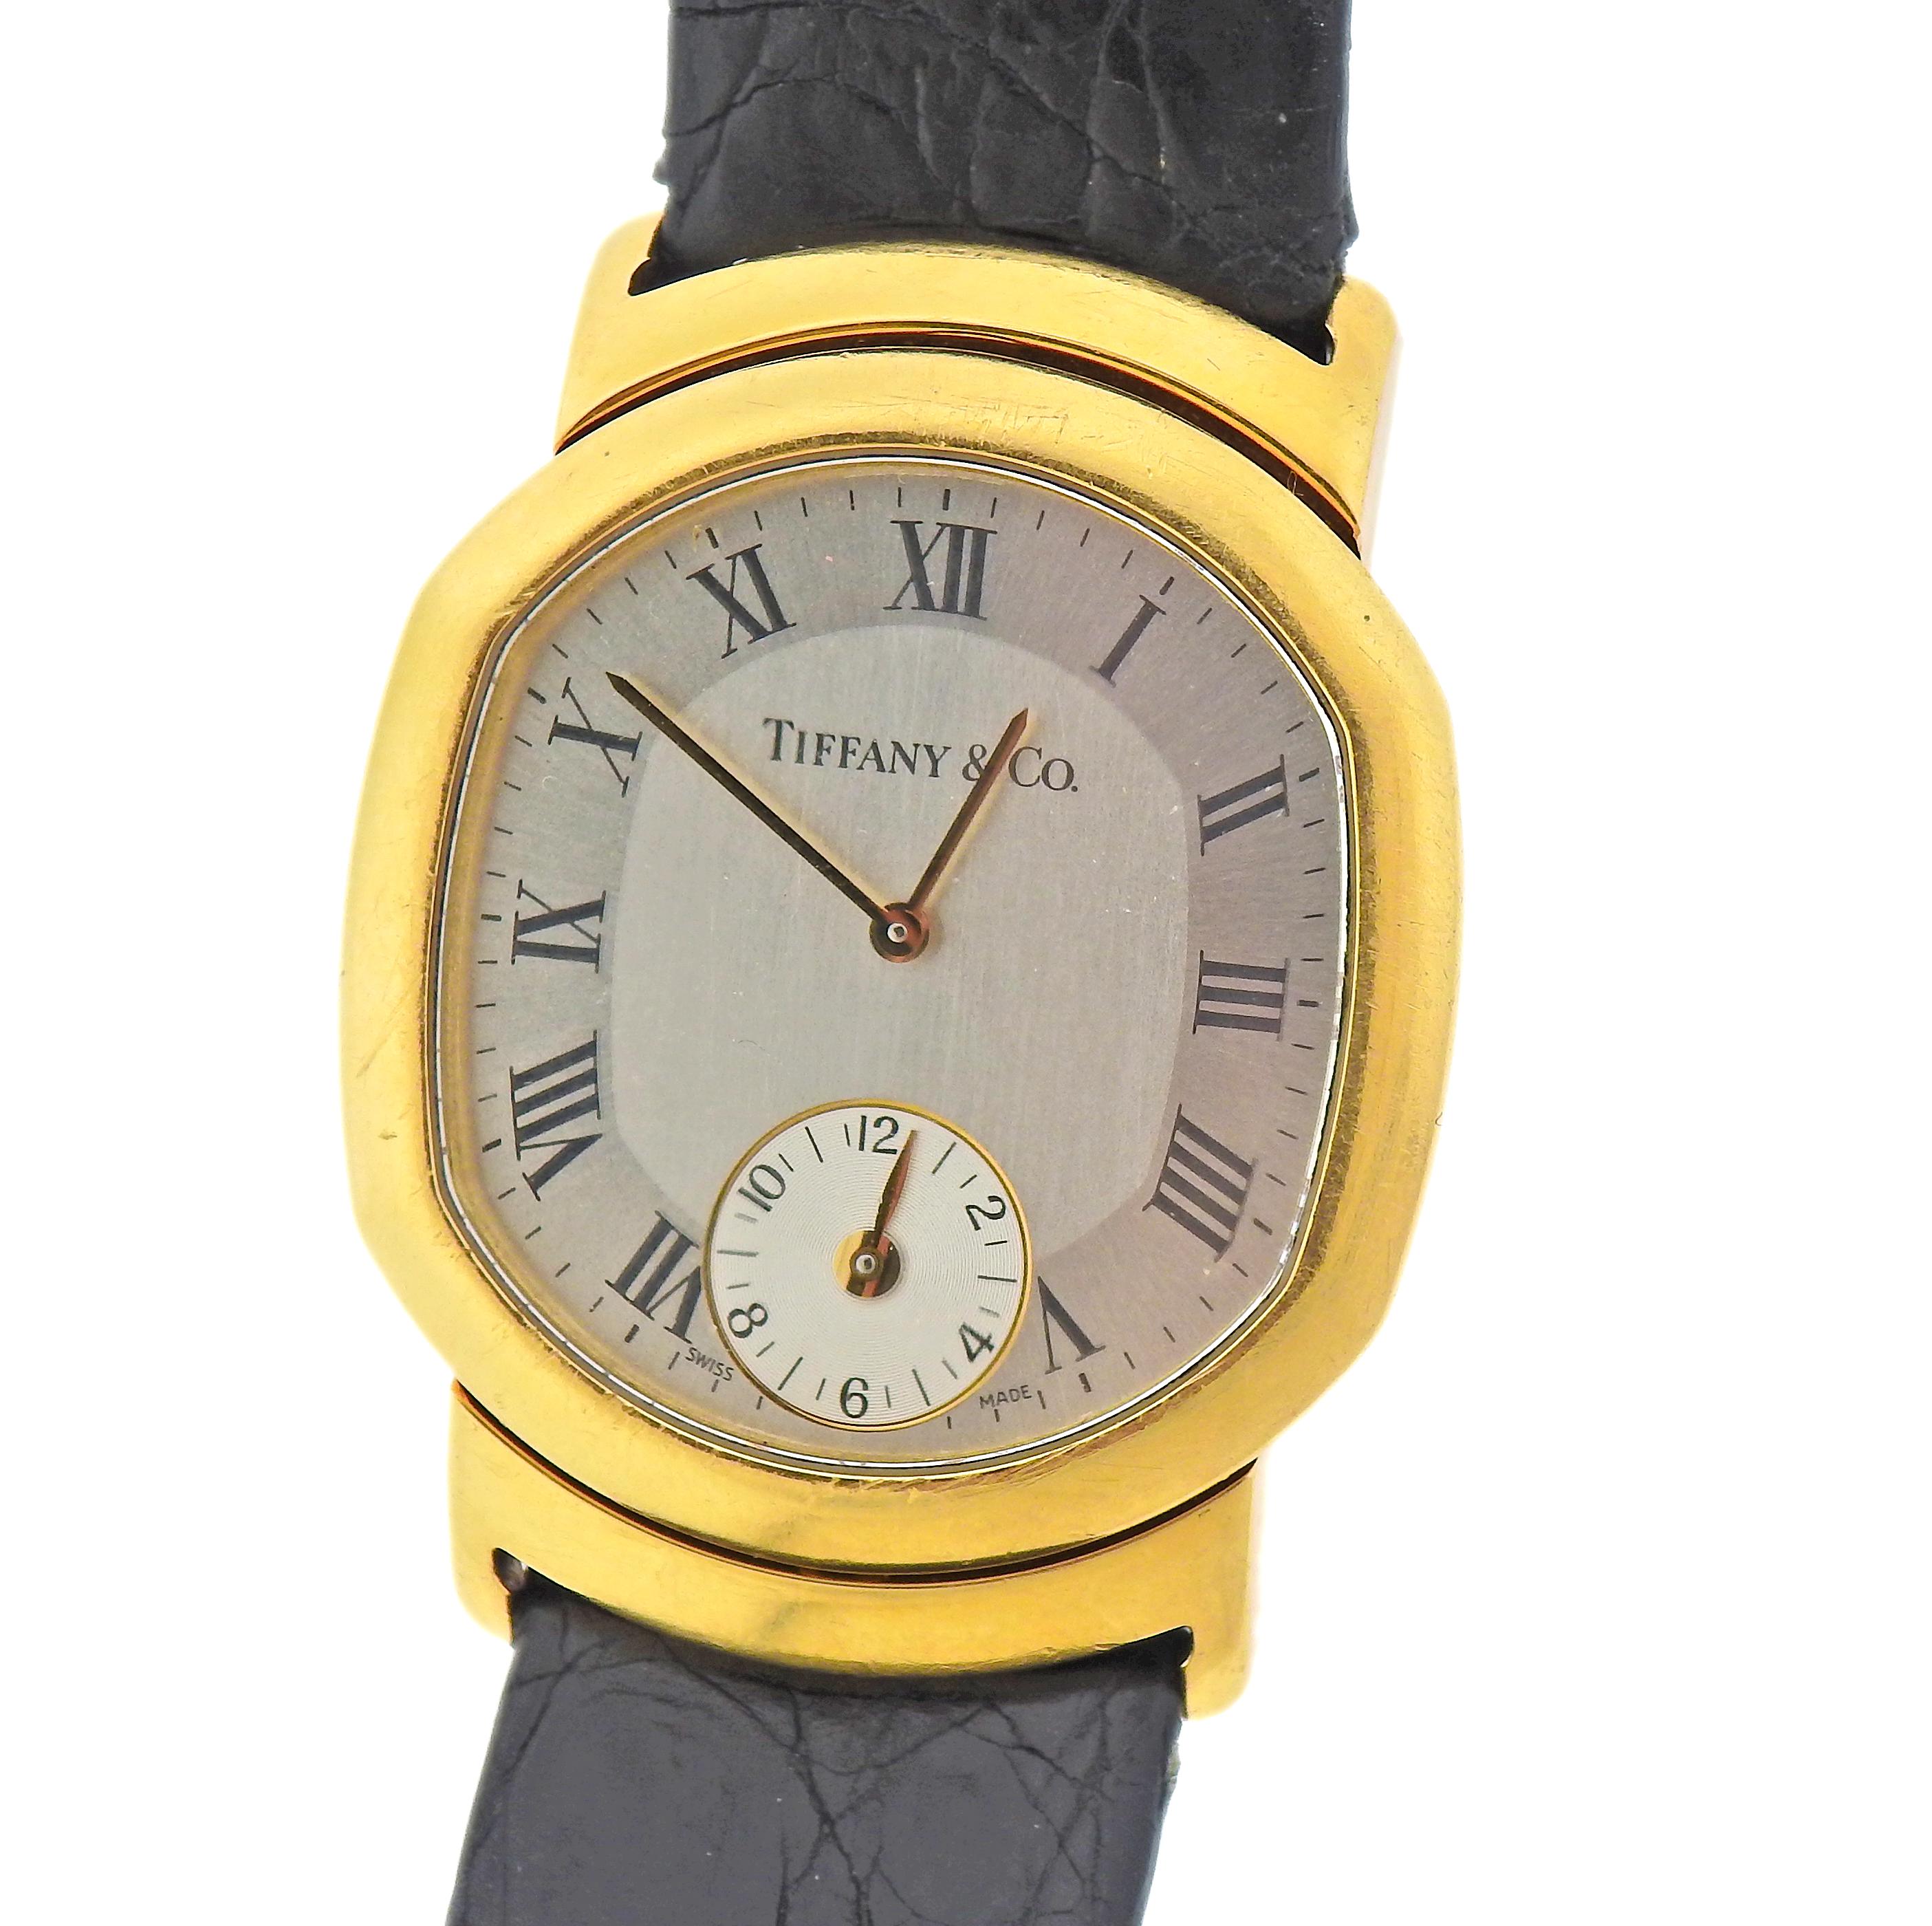 Vintage 18k Gold Uhr von Tiffany & Co,  mit Original-Lederband und 18-karätiger Goldschließe von T & Co. Das Gehäuse misst 32 mm x 40 mm. Das Band ist 8